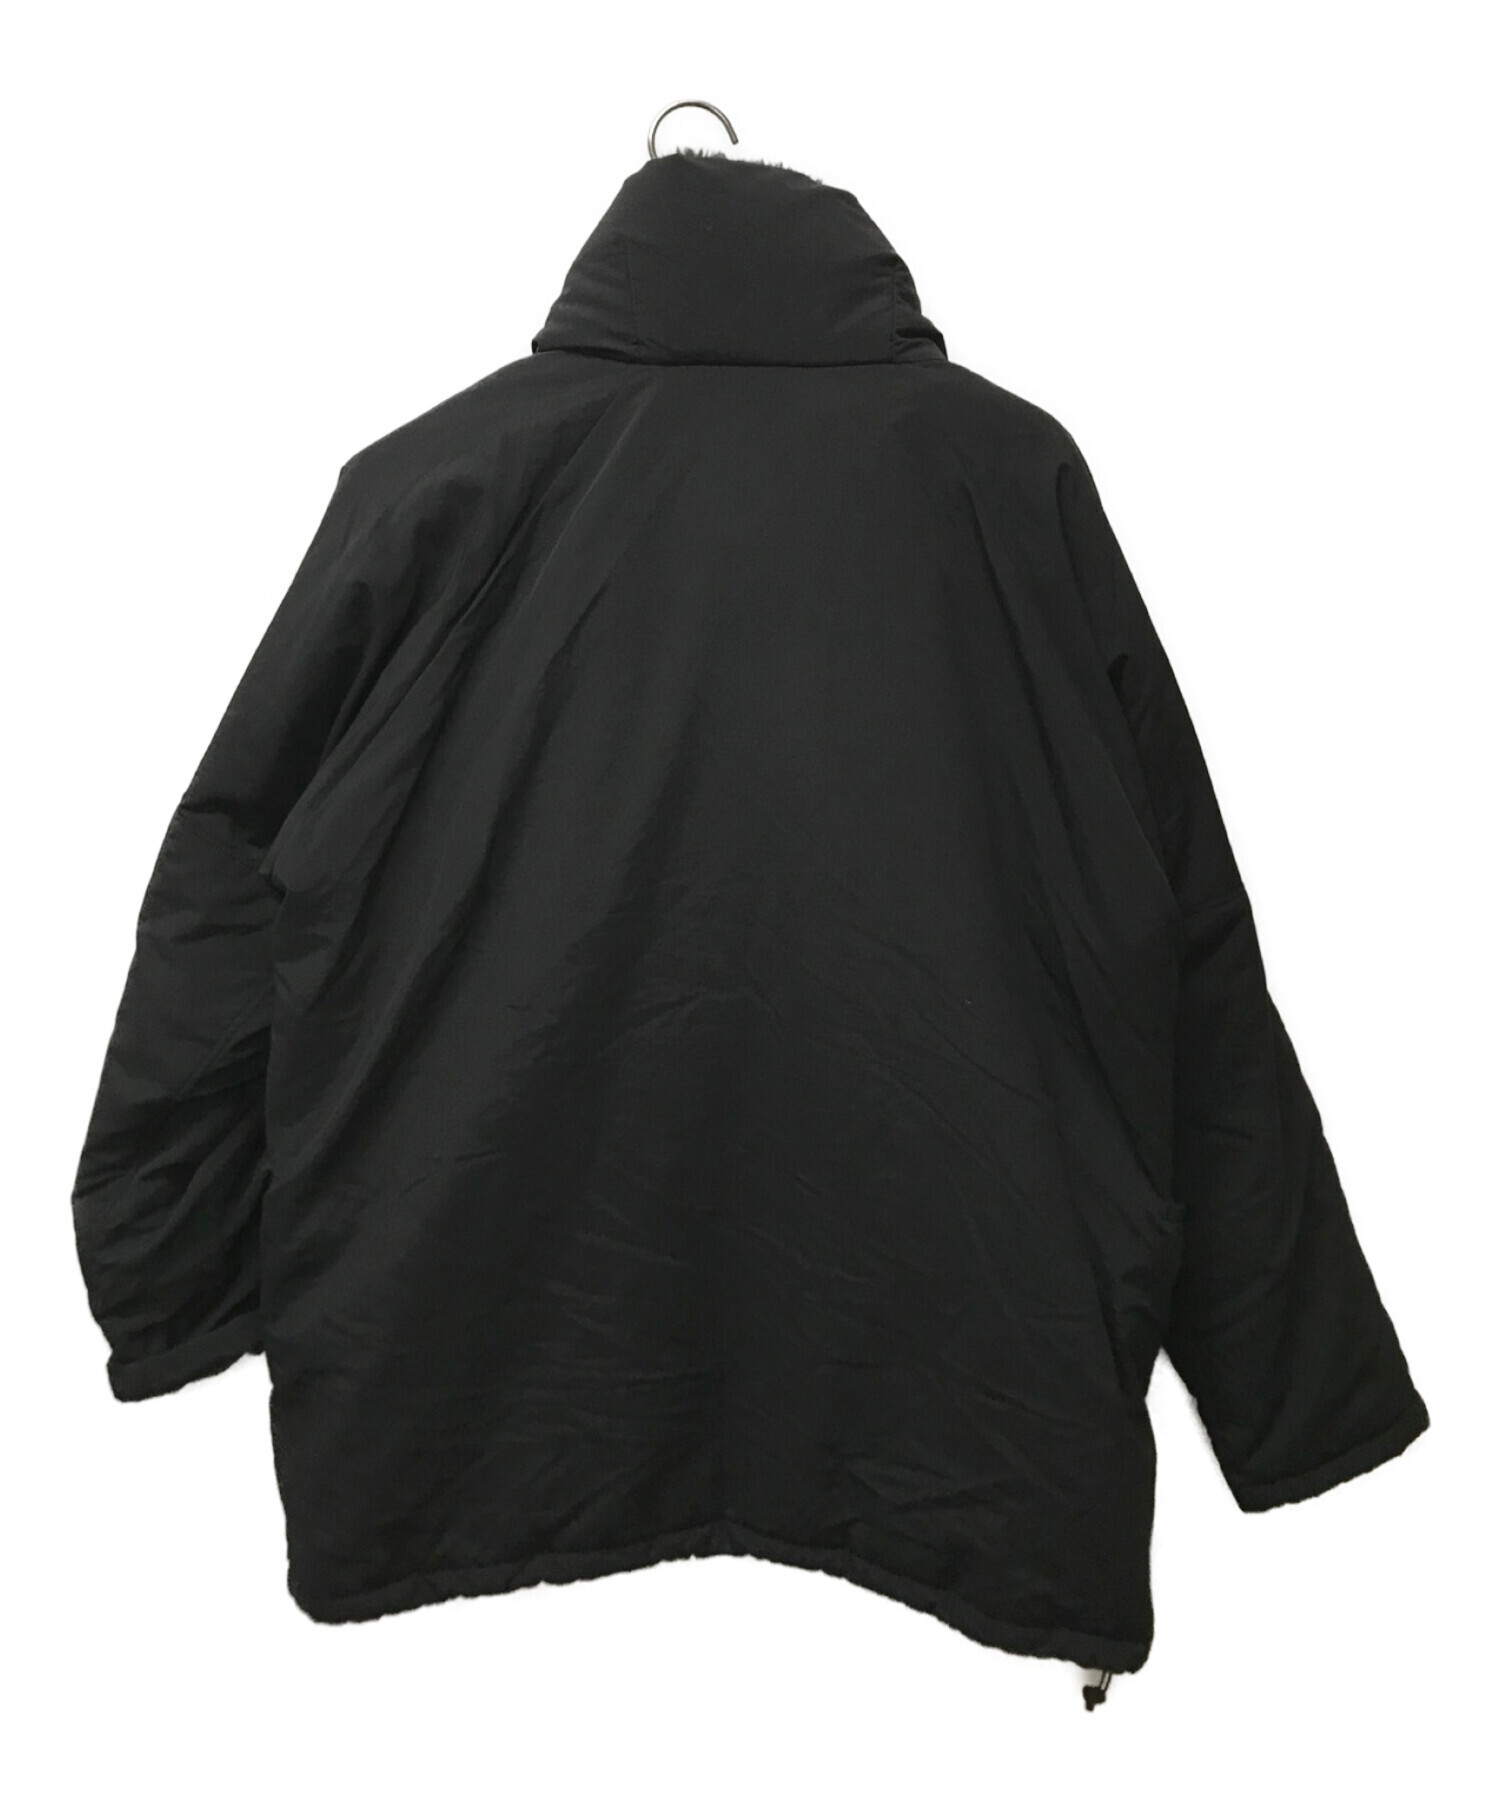 NATAL DESIGN (ネイタルデザイン) イングルマンジャケット ブラック サイズ:L